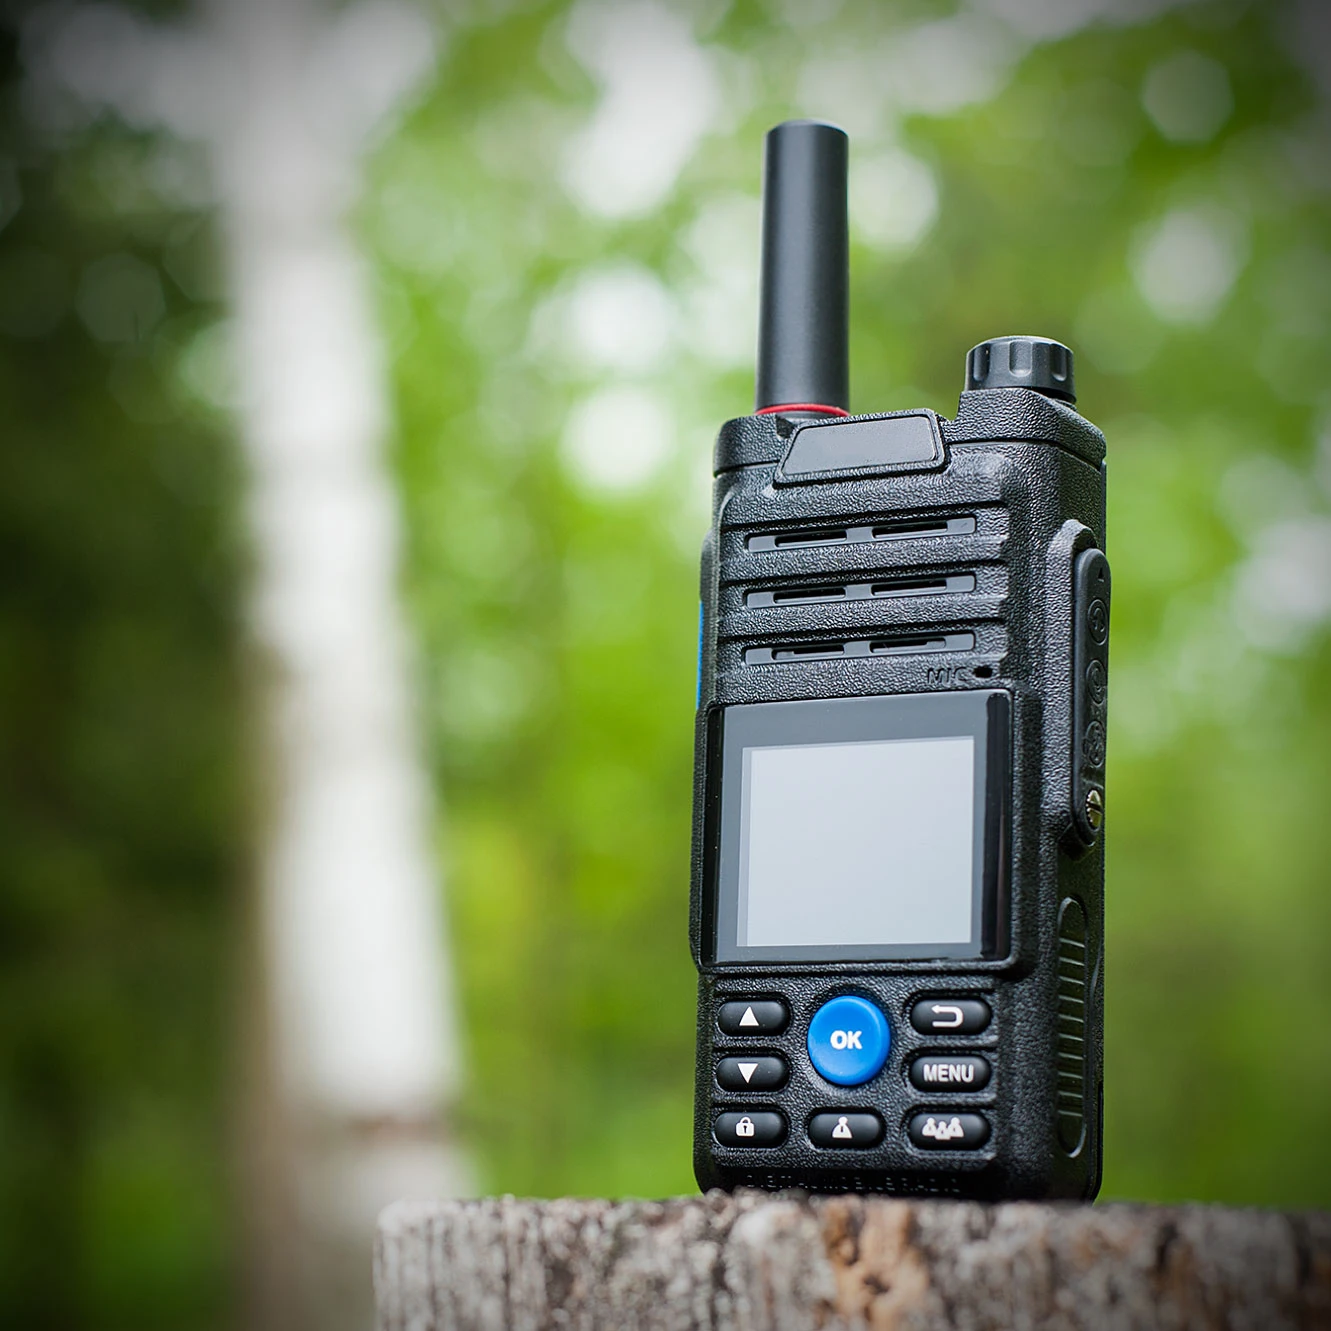 مجموعتين زيلو 4G موبايل راديو ريال Ptt أندرويد شبكة لاسلكي تخاطب للصيد 50 كجم 100 كجم بطاقة Sim 4G Poc راديو